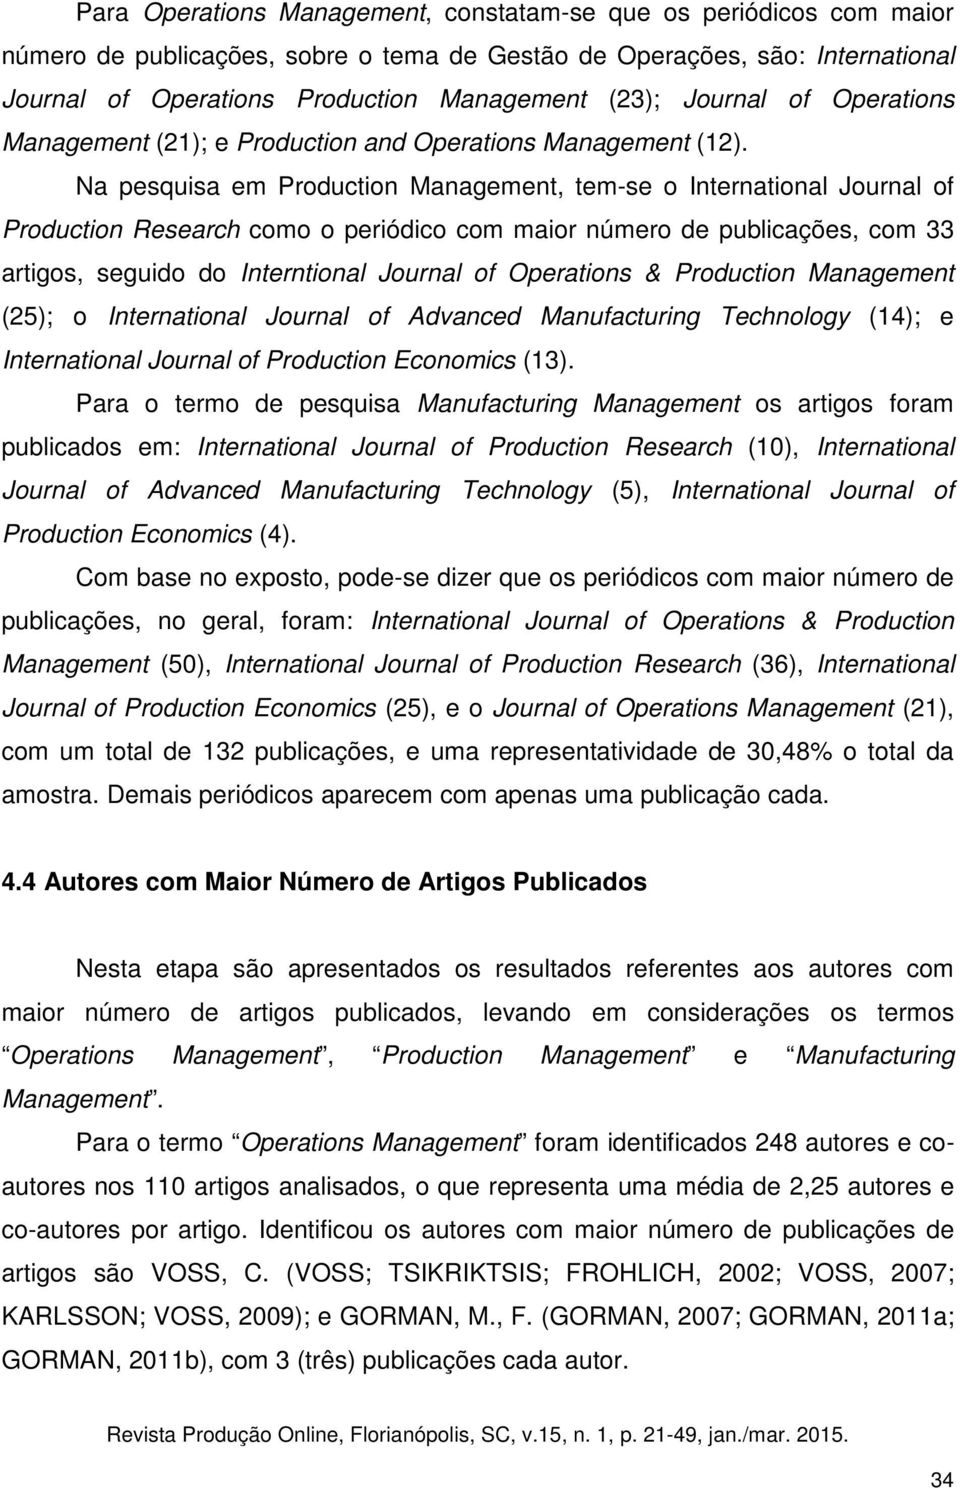 Na pesquisa em Production Management, temse o International Journal of Production Research como o periódico com maior número de publicações, com 33 artigos, seguido do Interntional Journal of